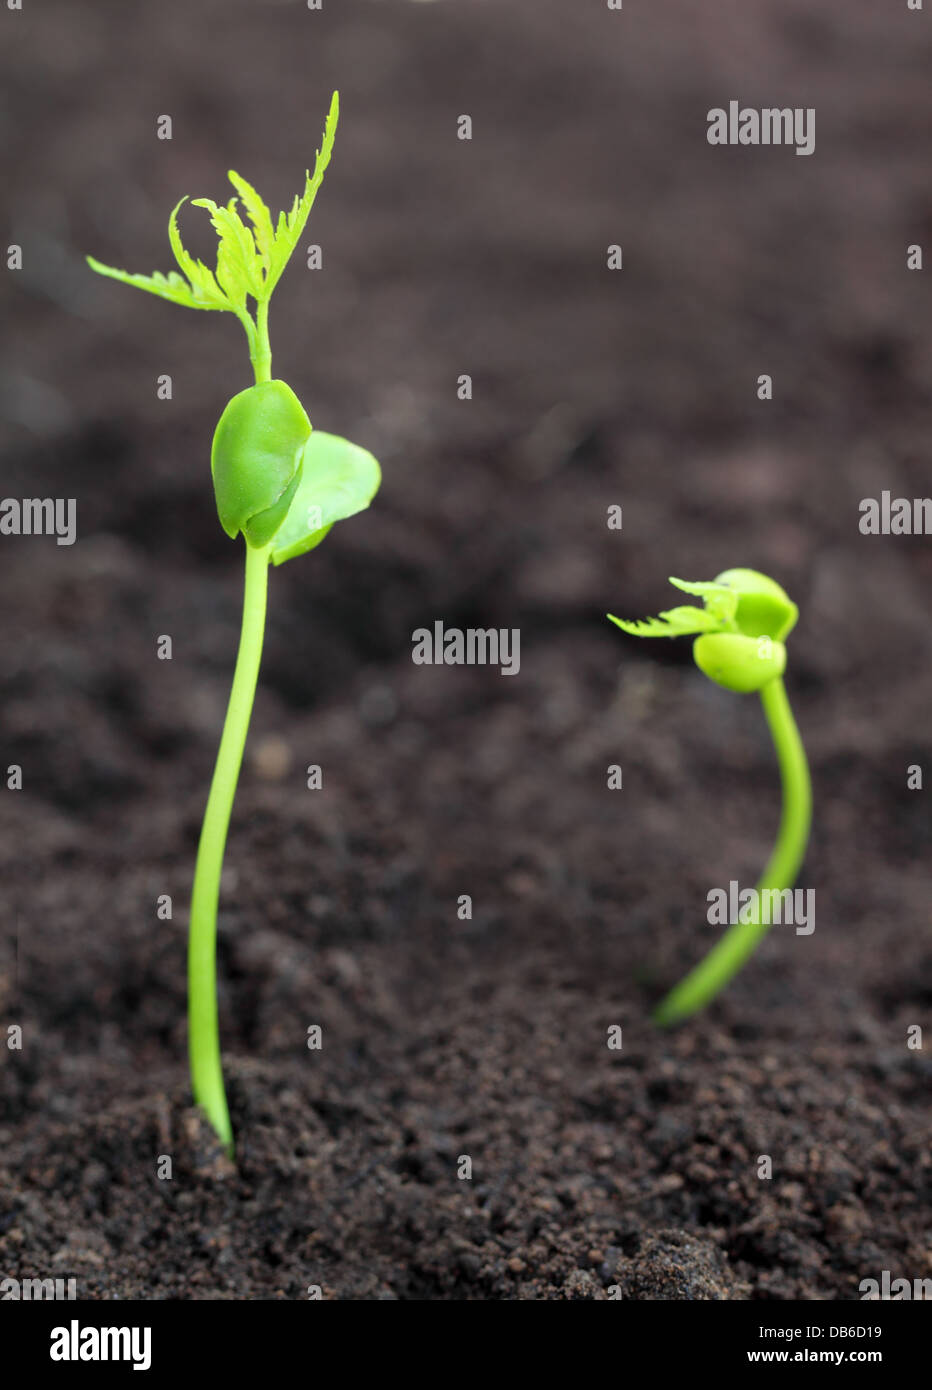 Baby neem plants Stock Photo